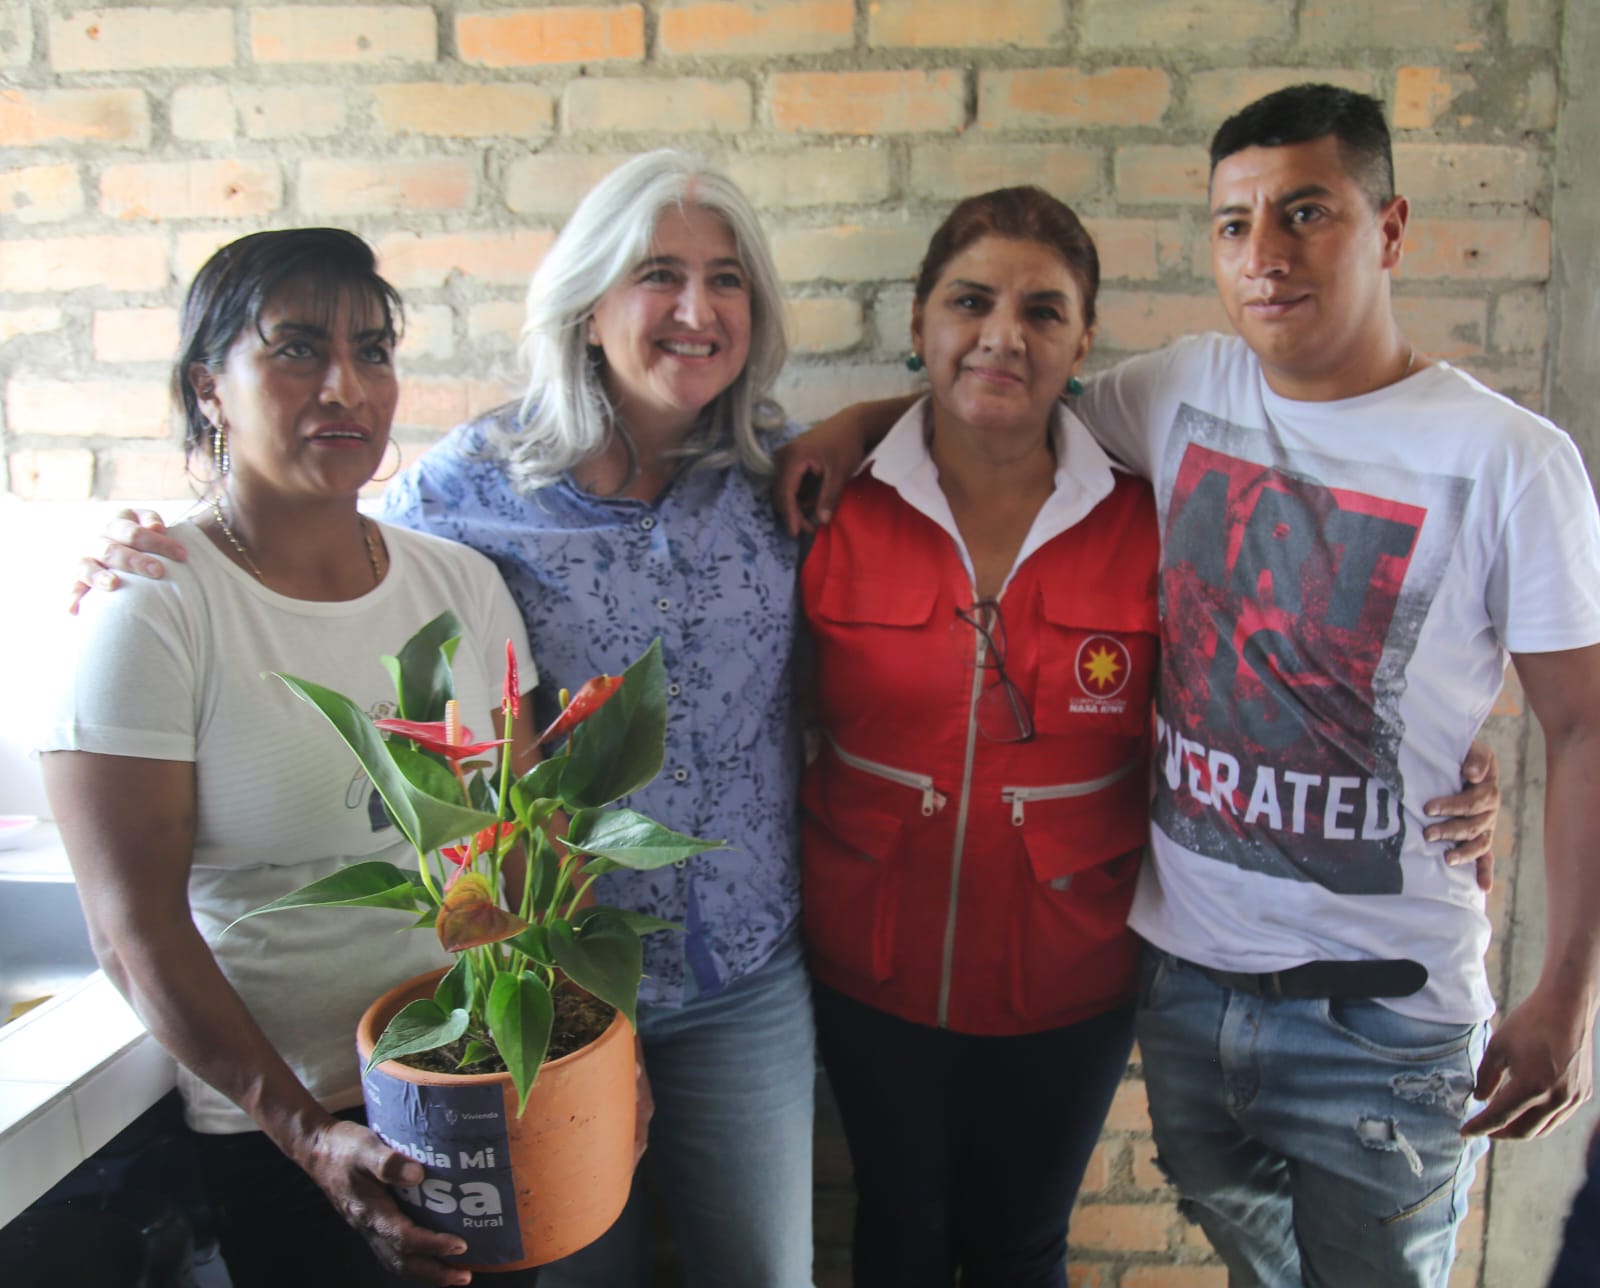 La inversión en mejoramientos de vivienda en el Cauca benefician a 377 familias de Popayán y del Resguardo Indígena Páez de Quintana. Foto: Sharon Duran (MVCT)